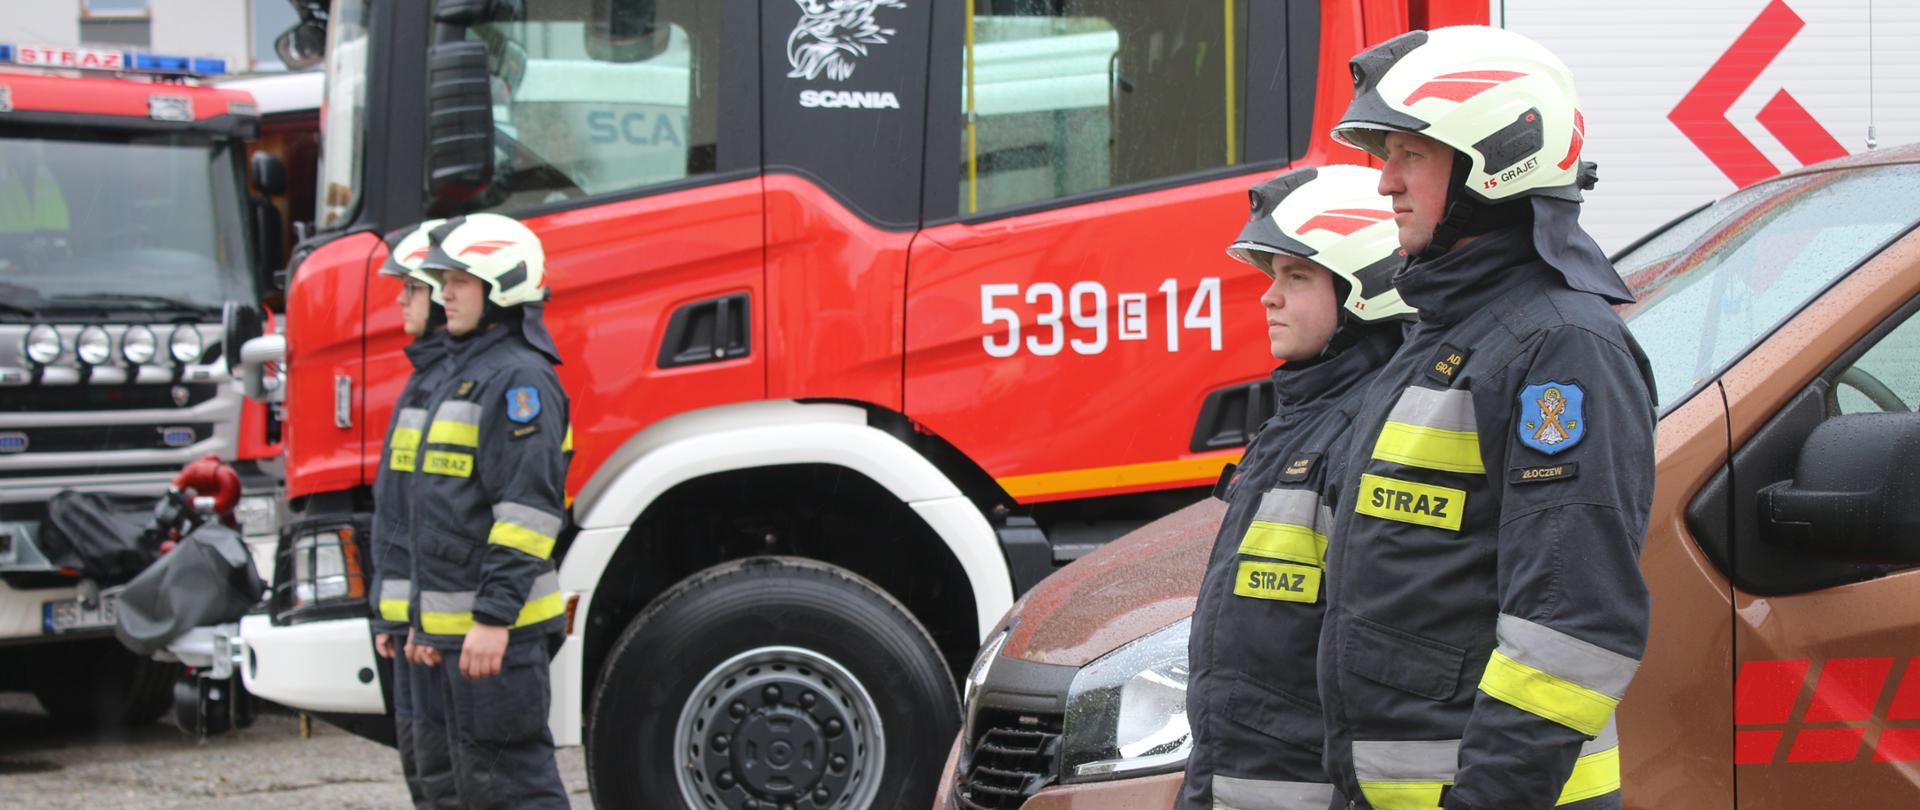 Na zdjęciu widzimy strażaków OSP wraz z przekazywanymi pojazdami